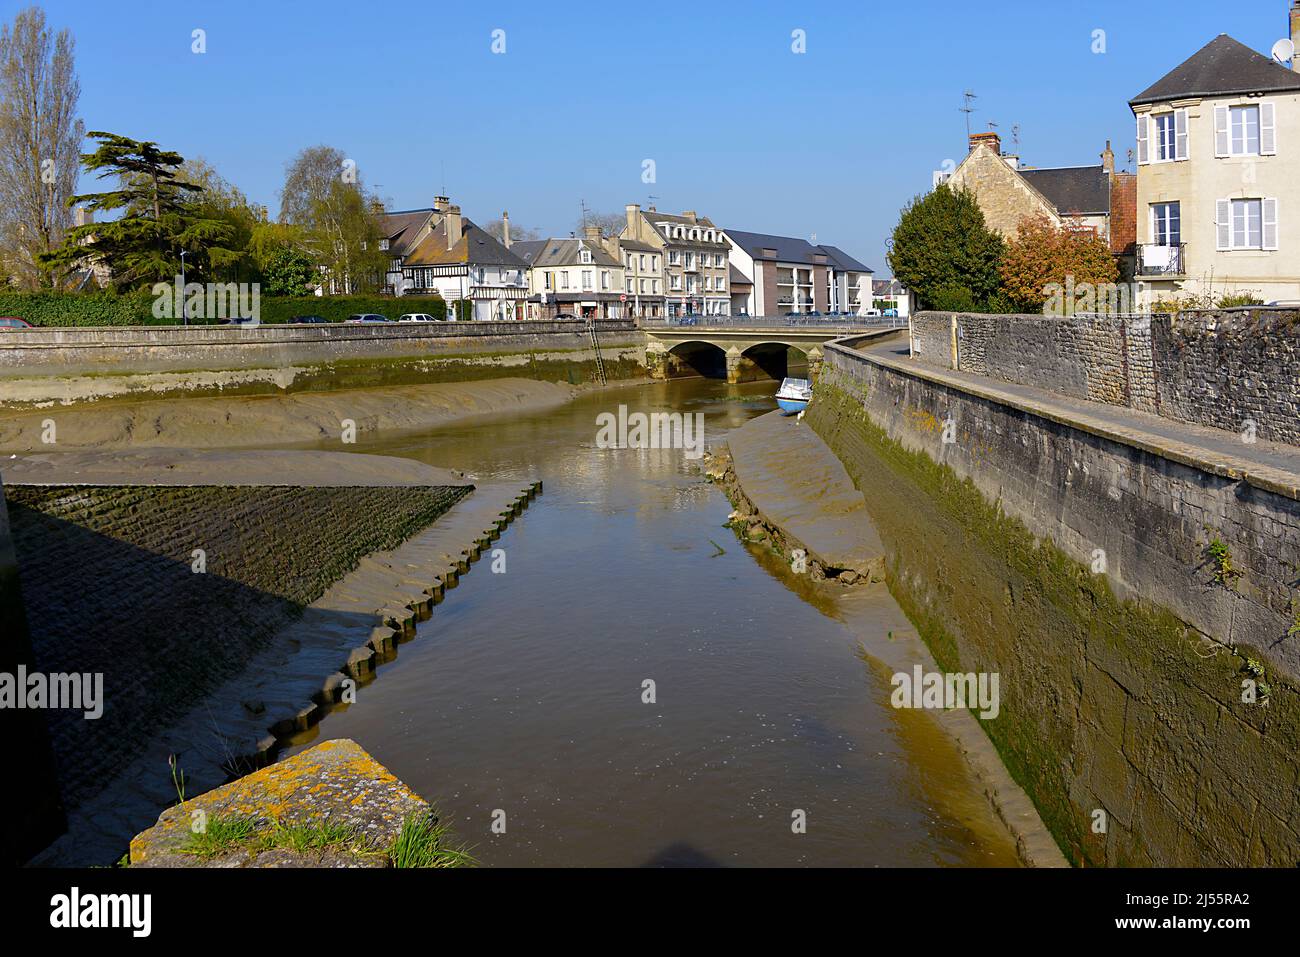 Chenal bei Ebbe in der Stadt Isigny sur Mer, Gemeinde im Département Calvados in der Region Basse-Normandie im Nordwesten Frankreichs. Stockfoto